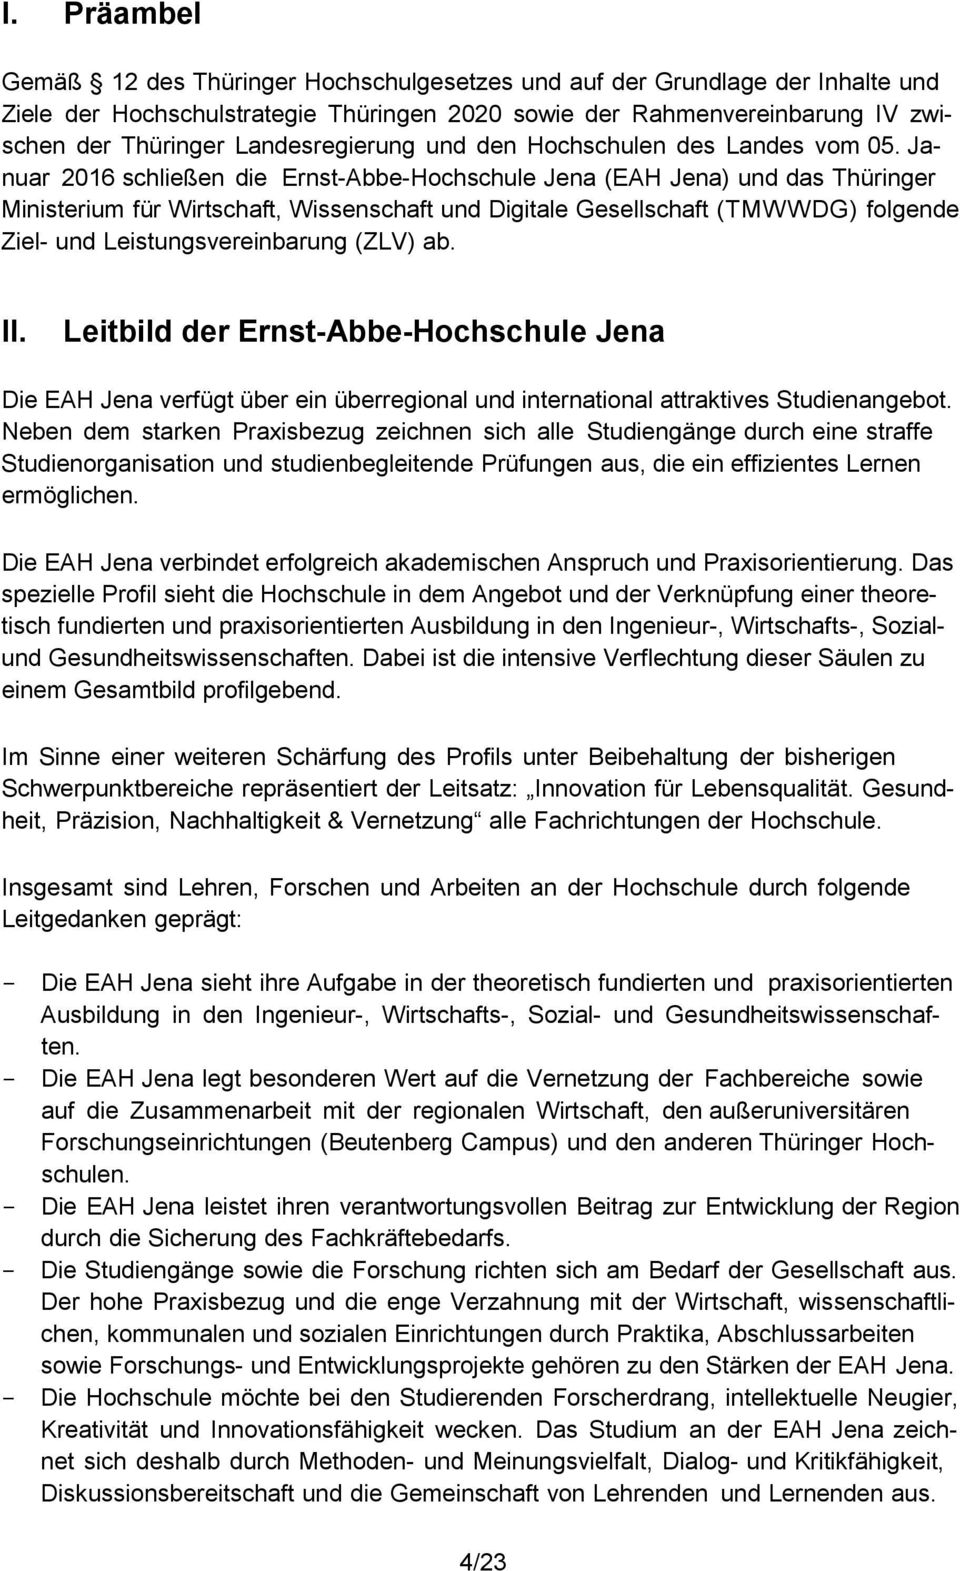 Januar 2016 schließen die Ernst-Abbe-Hochschule Jena (EAH Jena) und das Thüringer Ministerium für Wirtschaft, Wissenschaft und Digitale Gesellschaft (TMWWDG) folgende Ziel- und Leistungsvereinbarung